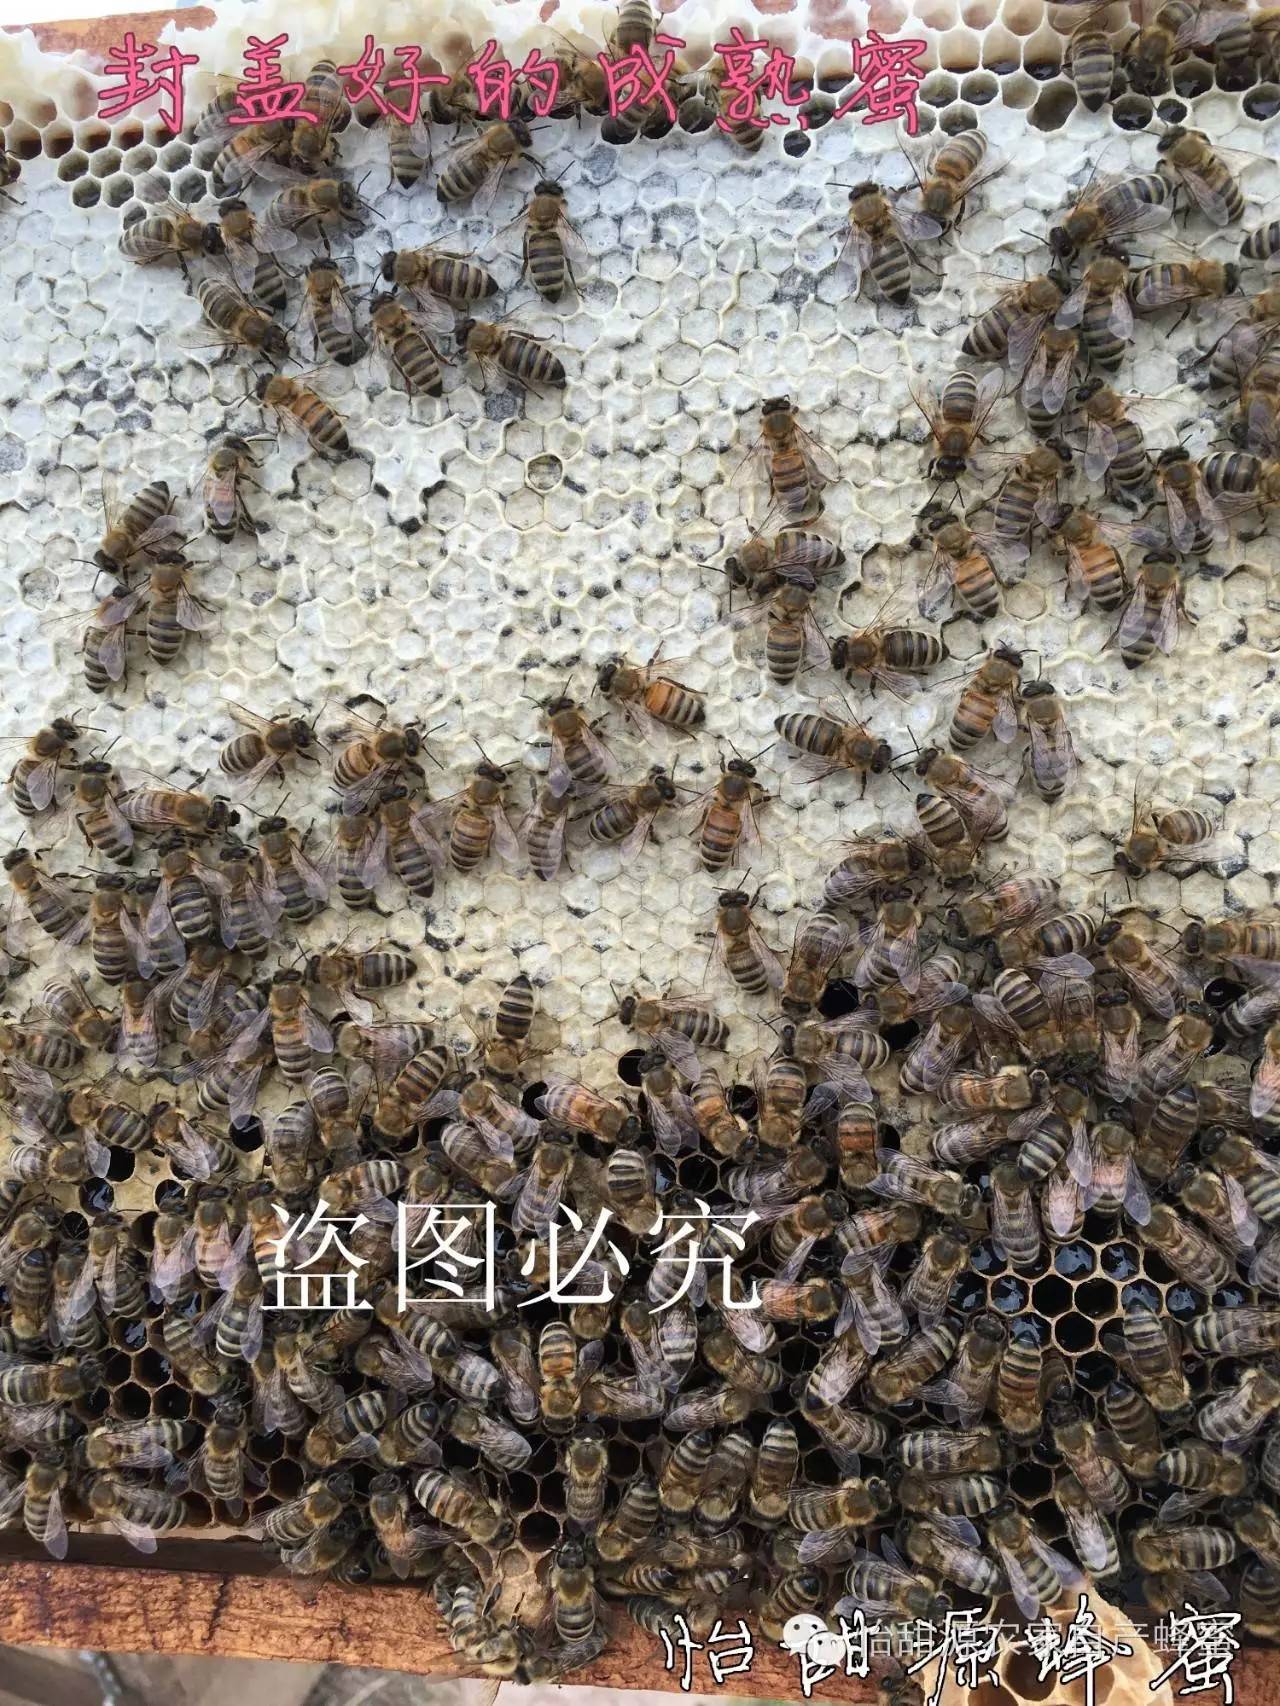 枸杞菊花茶加蜂蜜 蜂蜜中的沉淀物 蜂蜜能直接敷脸吗 蛋清蜂蜜柠檬面膜 野生蜂蜜有毒吗